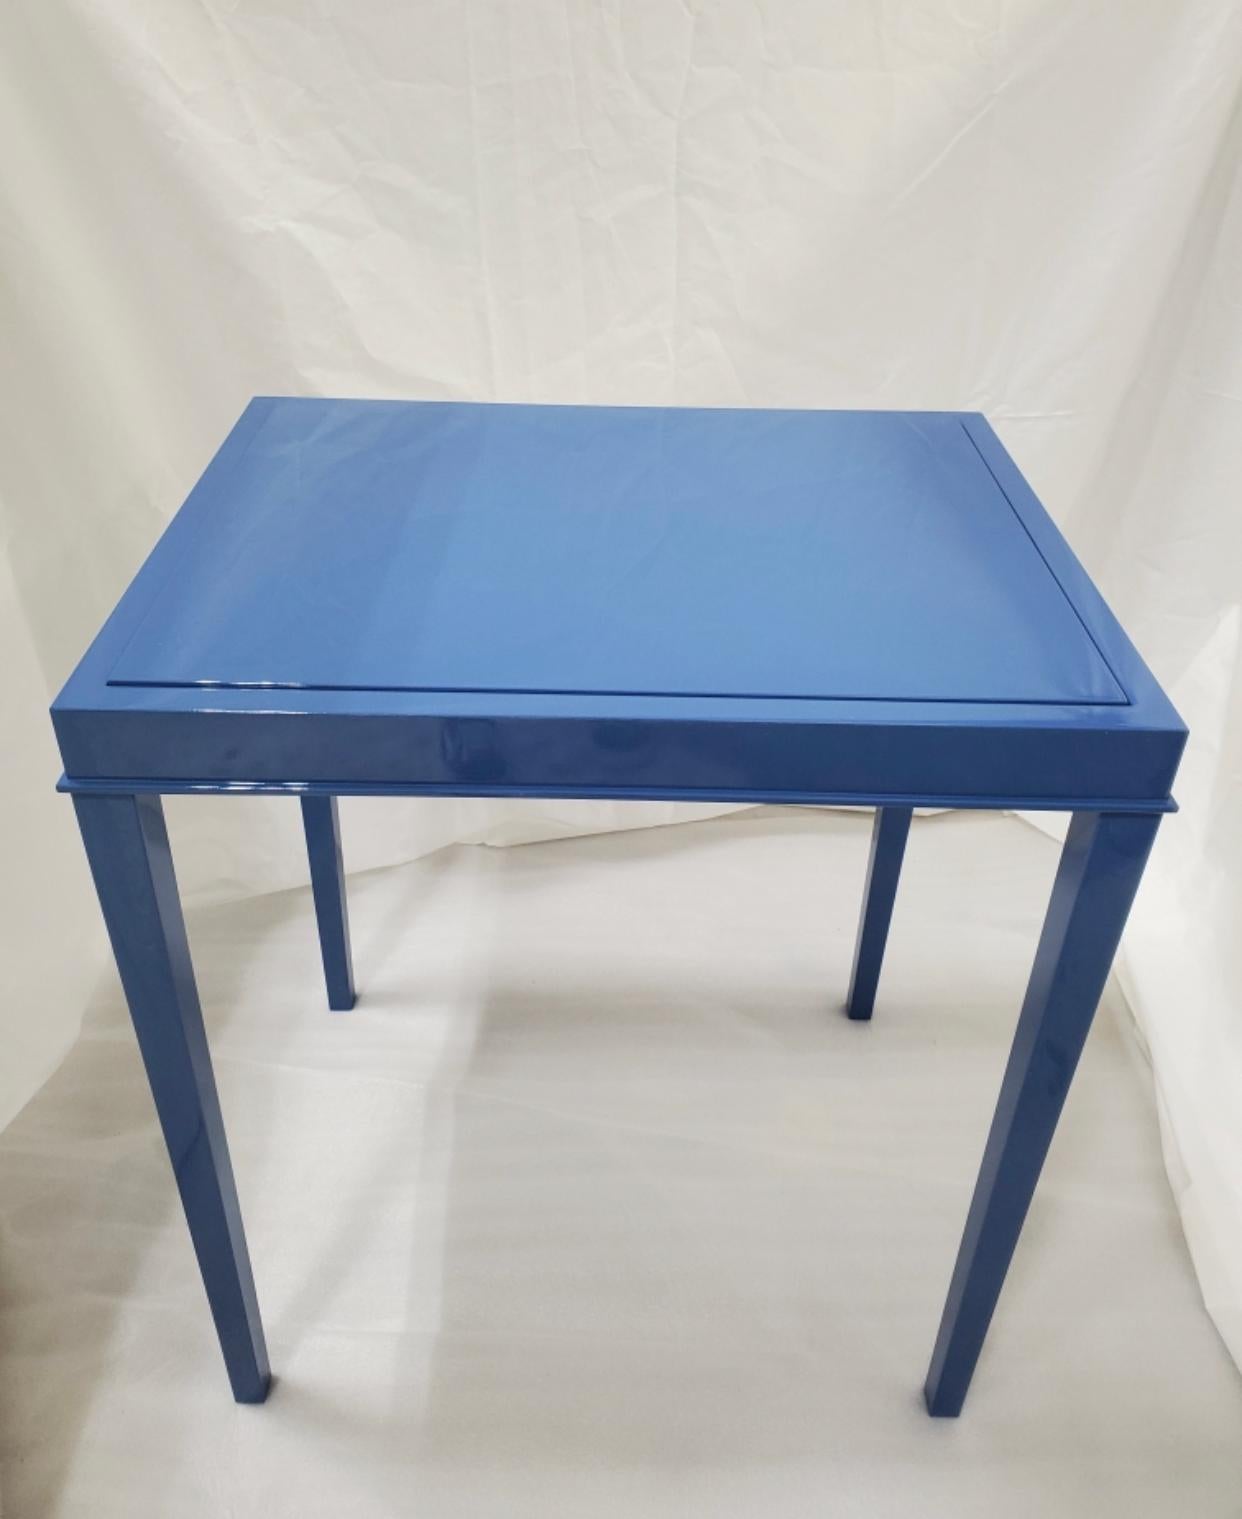 Blauer Lacktisch, der sich in einen Backgammon-Tisch verwandeln lässt.
Neue Produktion. Jeder Tisch wird in NYC entworfen und hergestellt und hat einzigartige Eigenschaften. Eintägige Lieferung in NYC möglich.
 
 